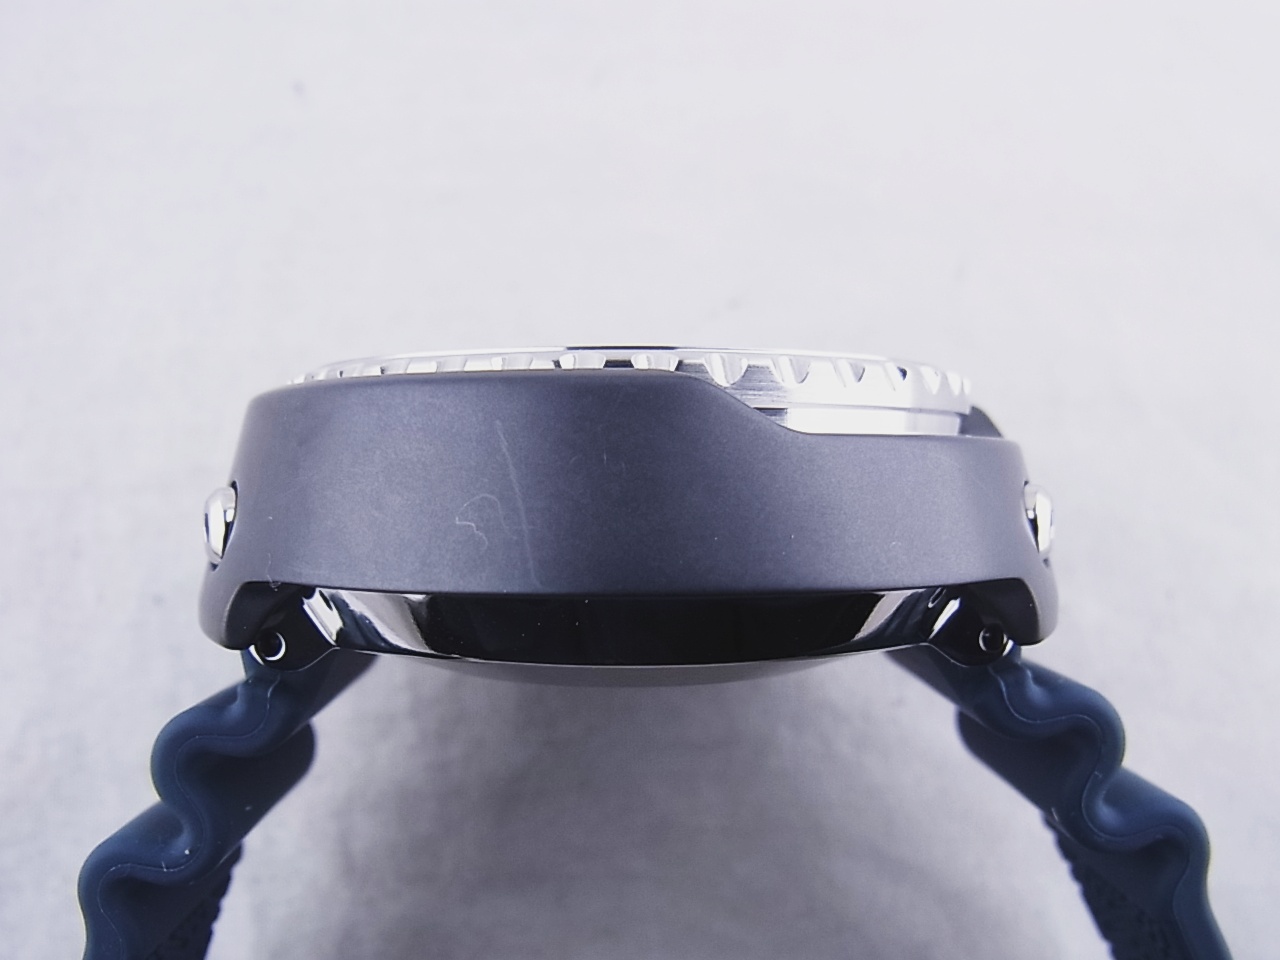 セイコー SEIKO SBDX035 ブルー メンズ 腕時計